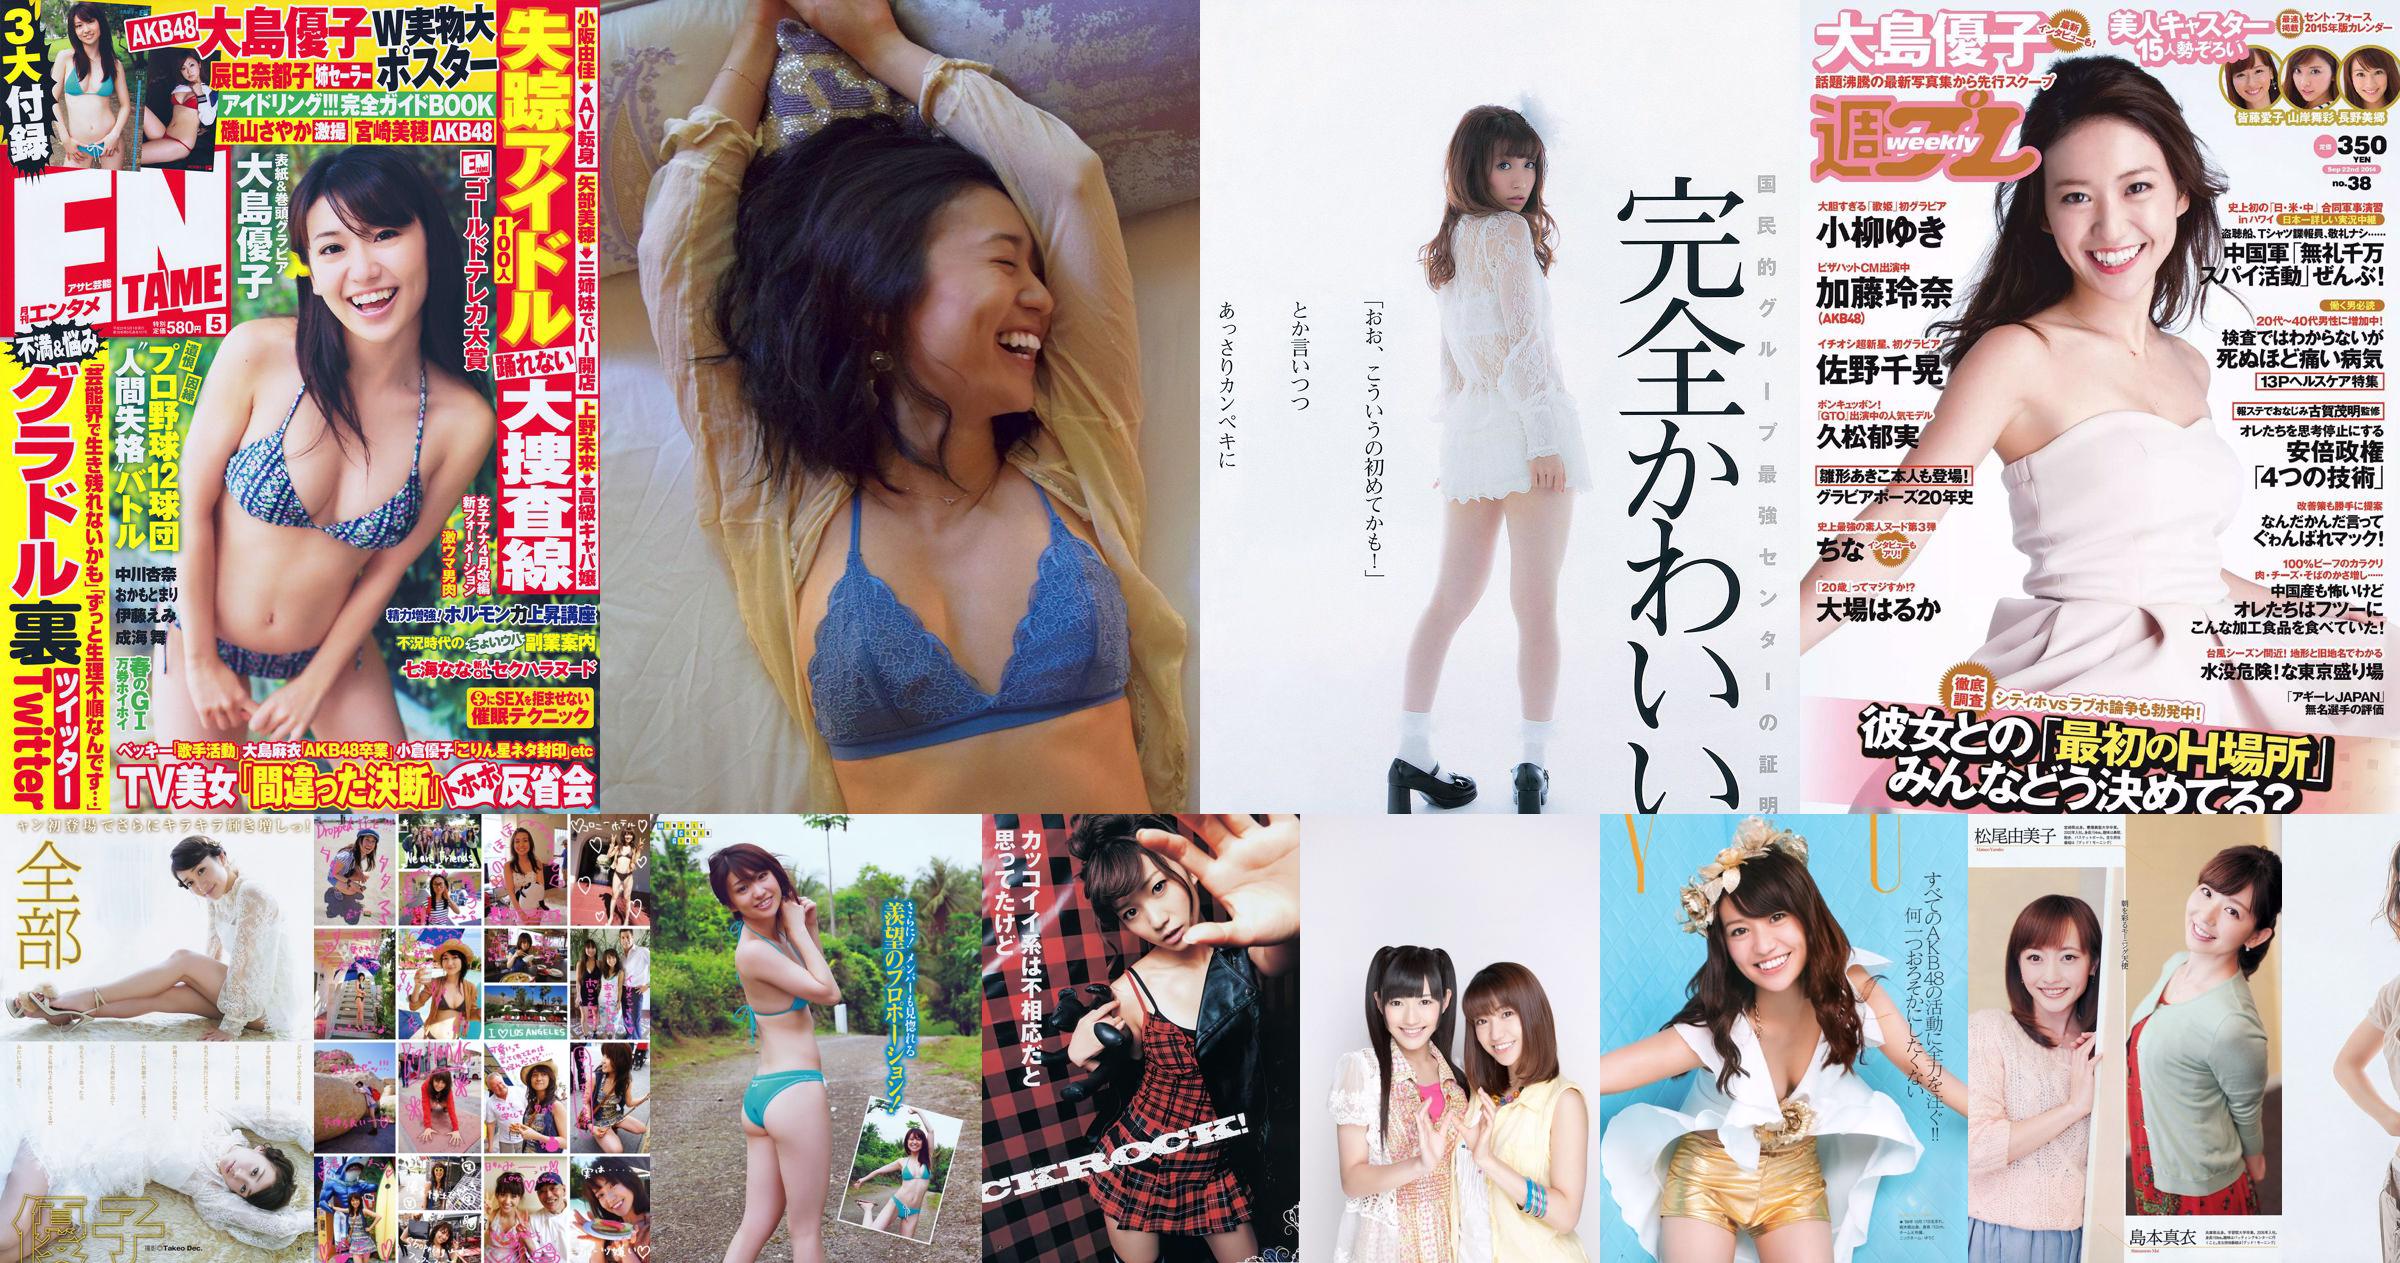 Yuko Oshima Mari Yamachi Mio Otani Rina Koike Mai Kamuro Aiko Eguchi [Weekly Playboy] 2014 No.10 Photograph No.e11e14 Page 11